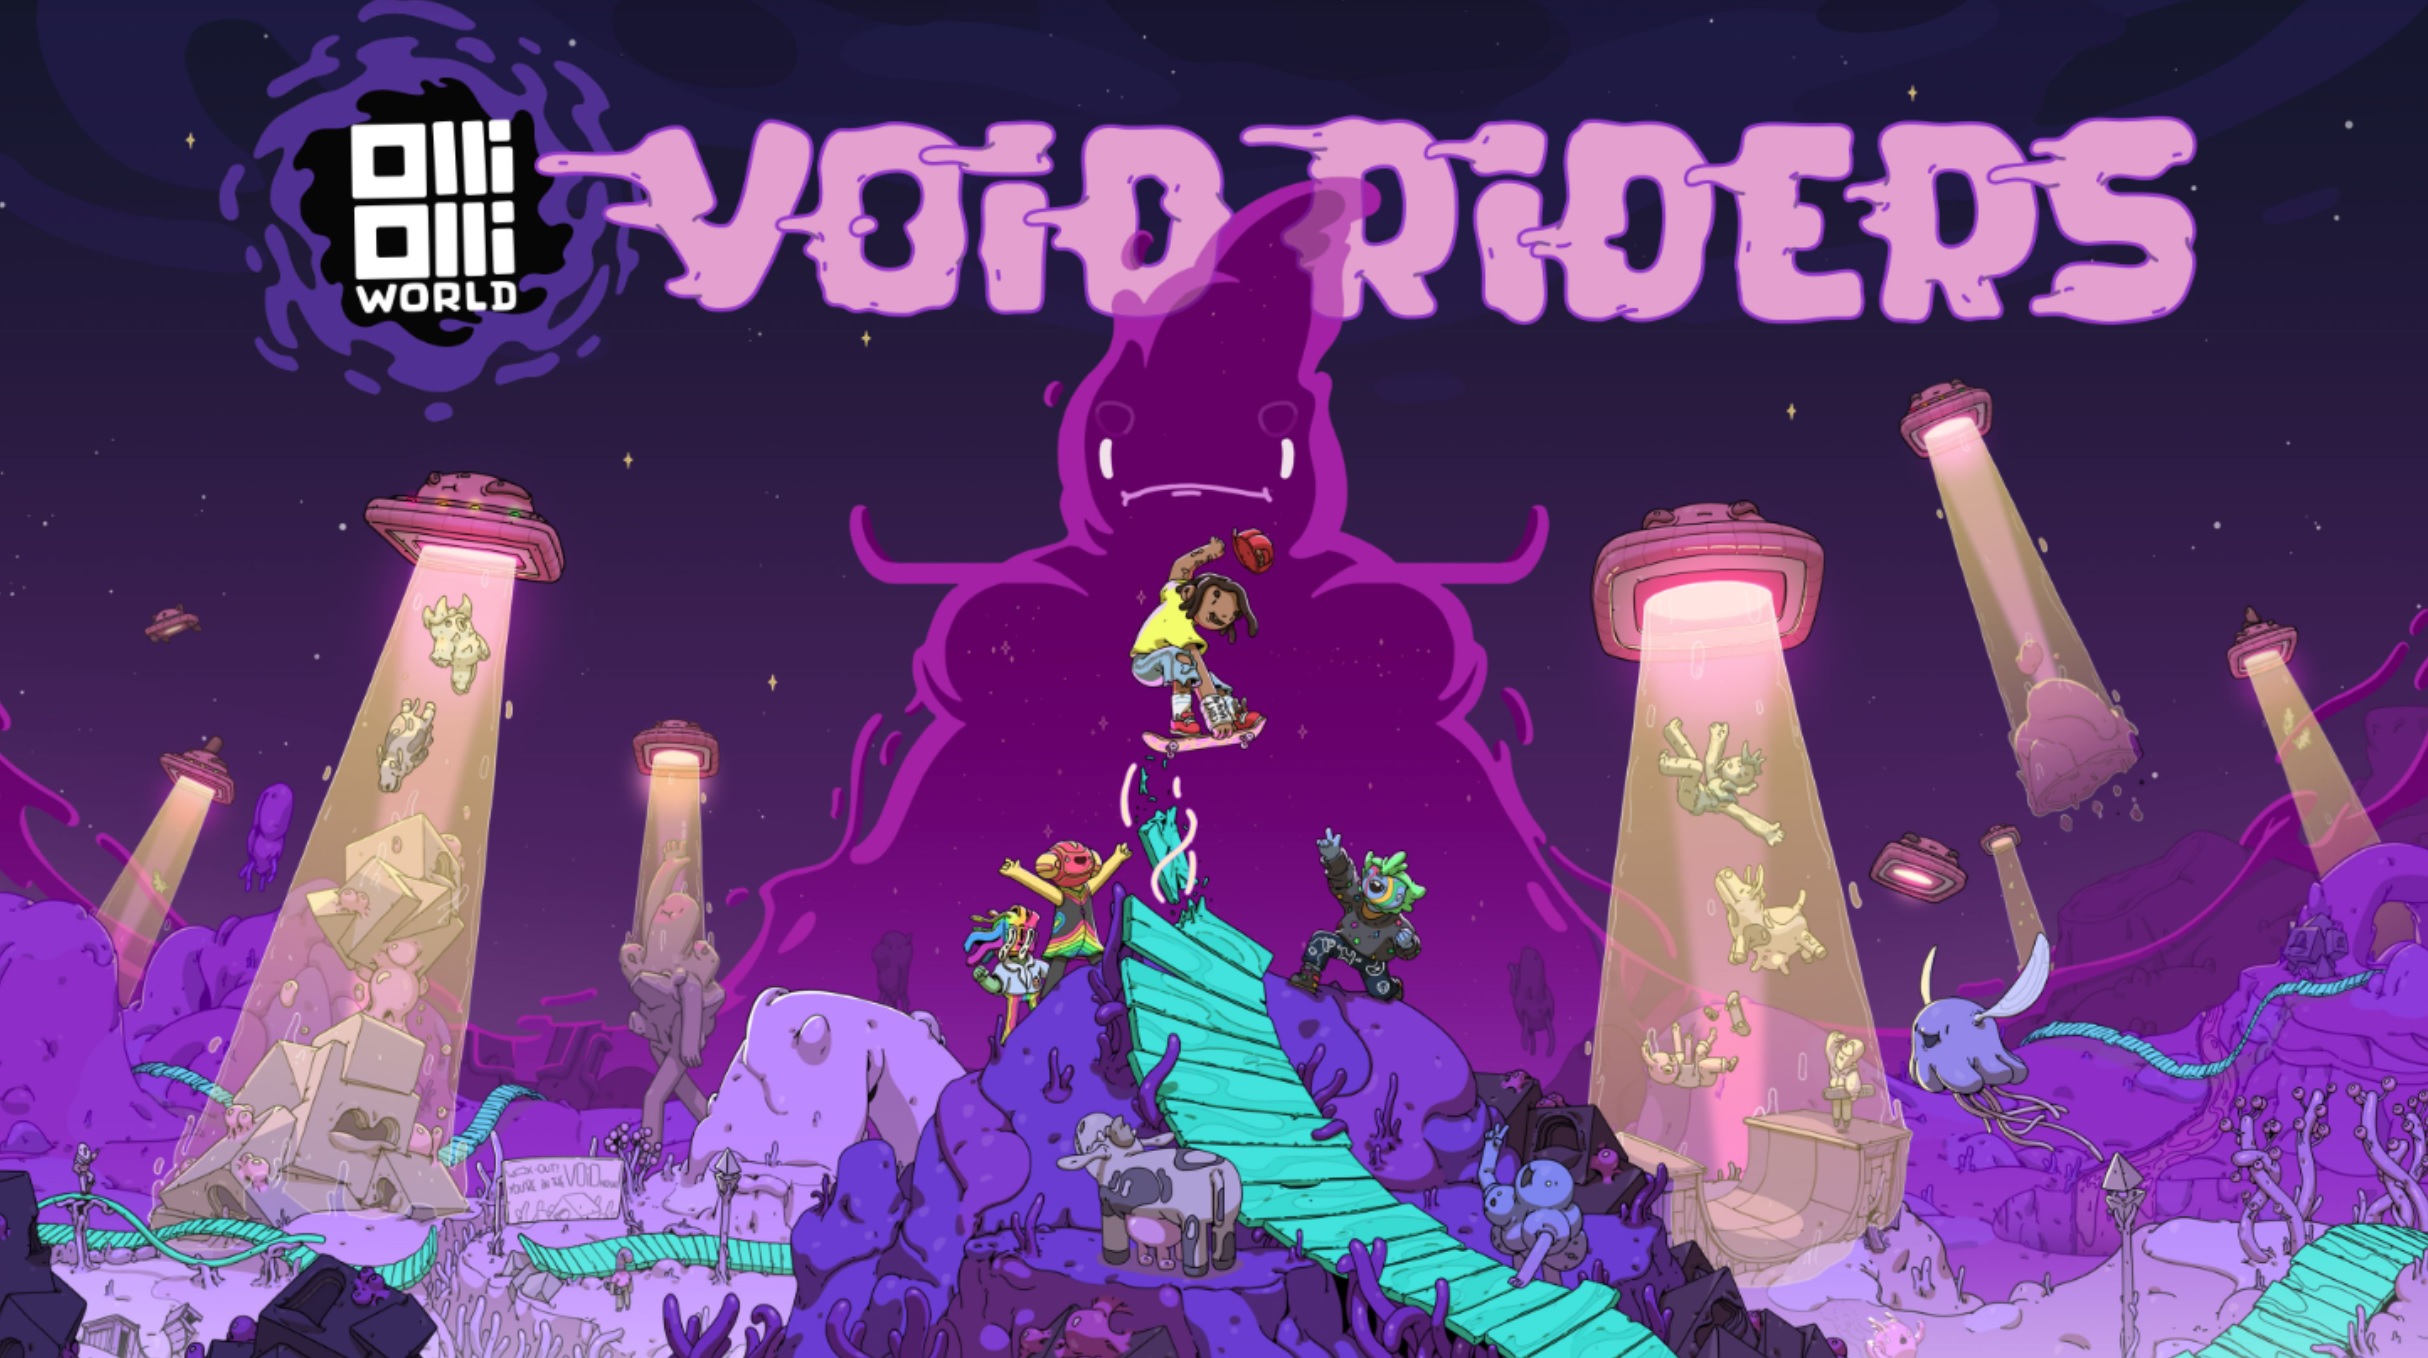 OlliOlli World: VOID Riders è ora disponibile